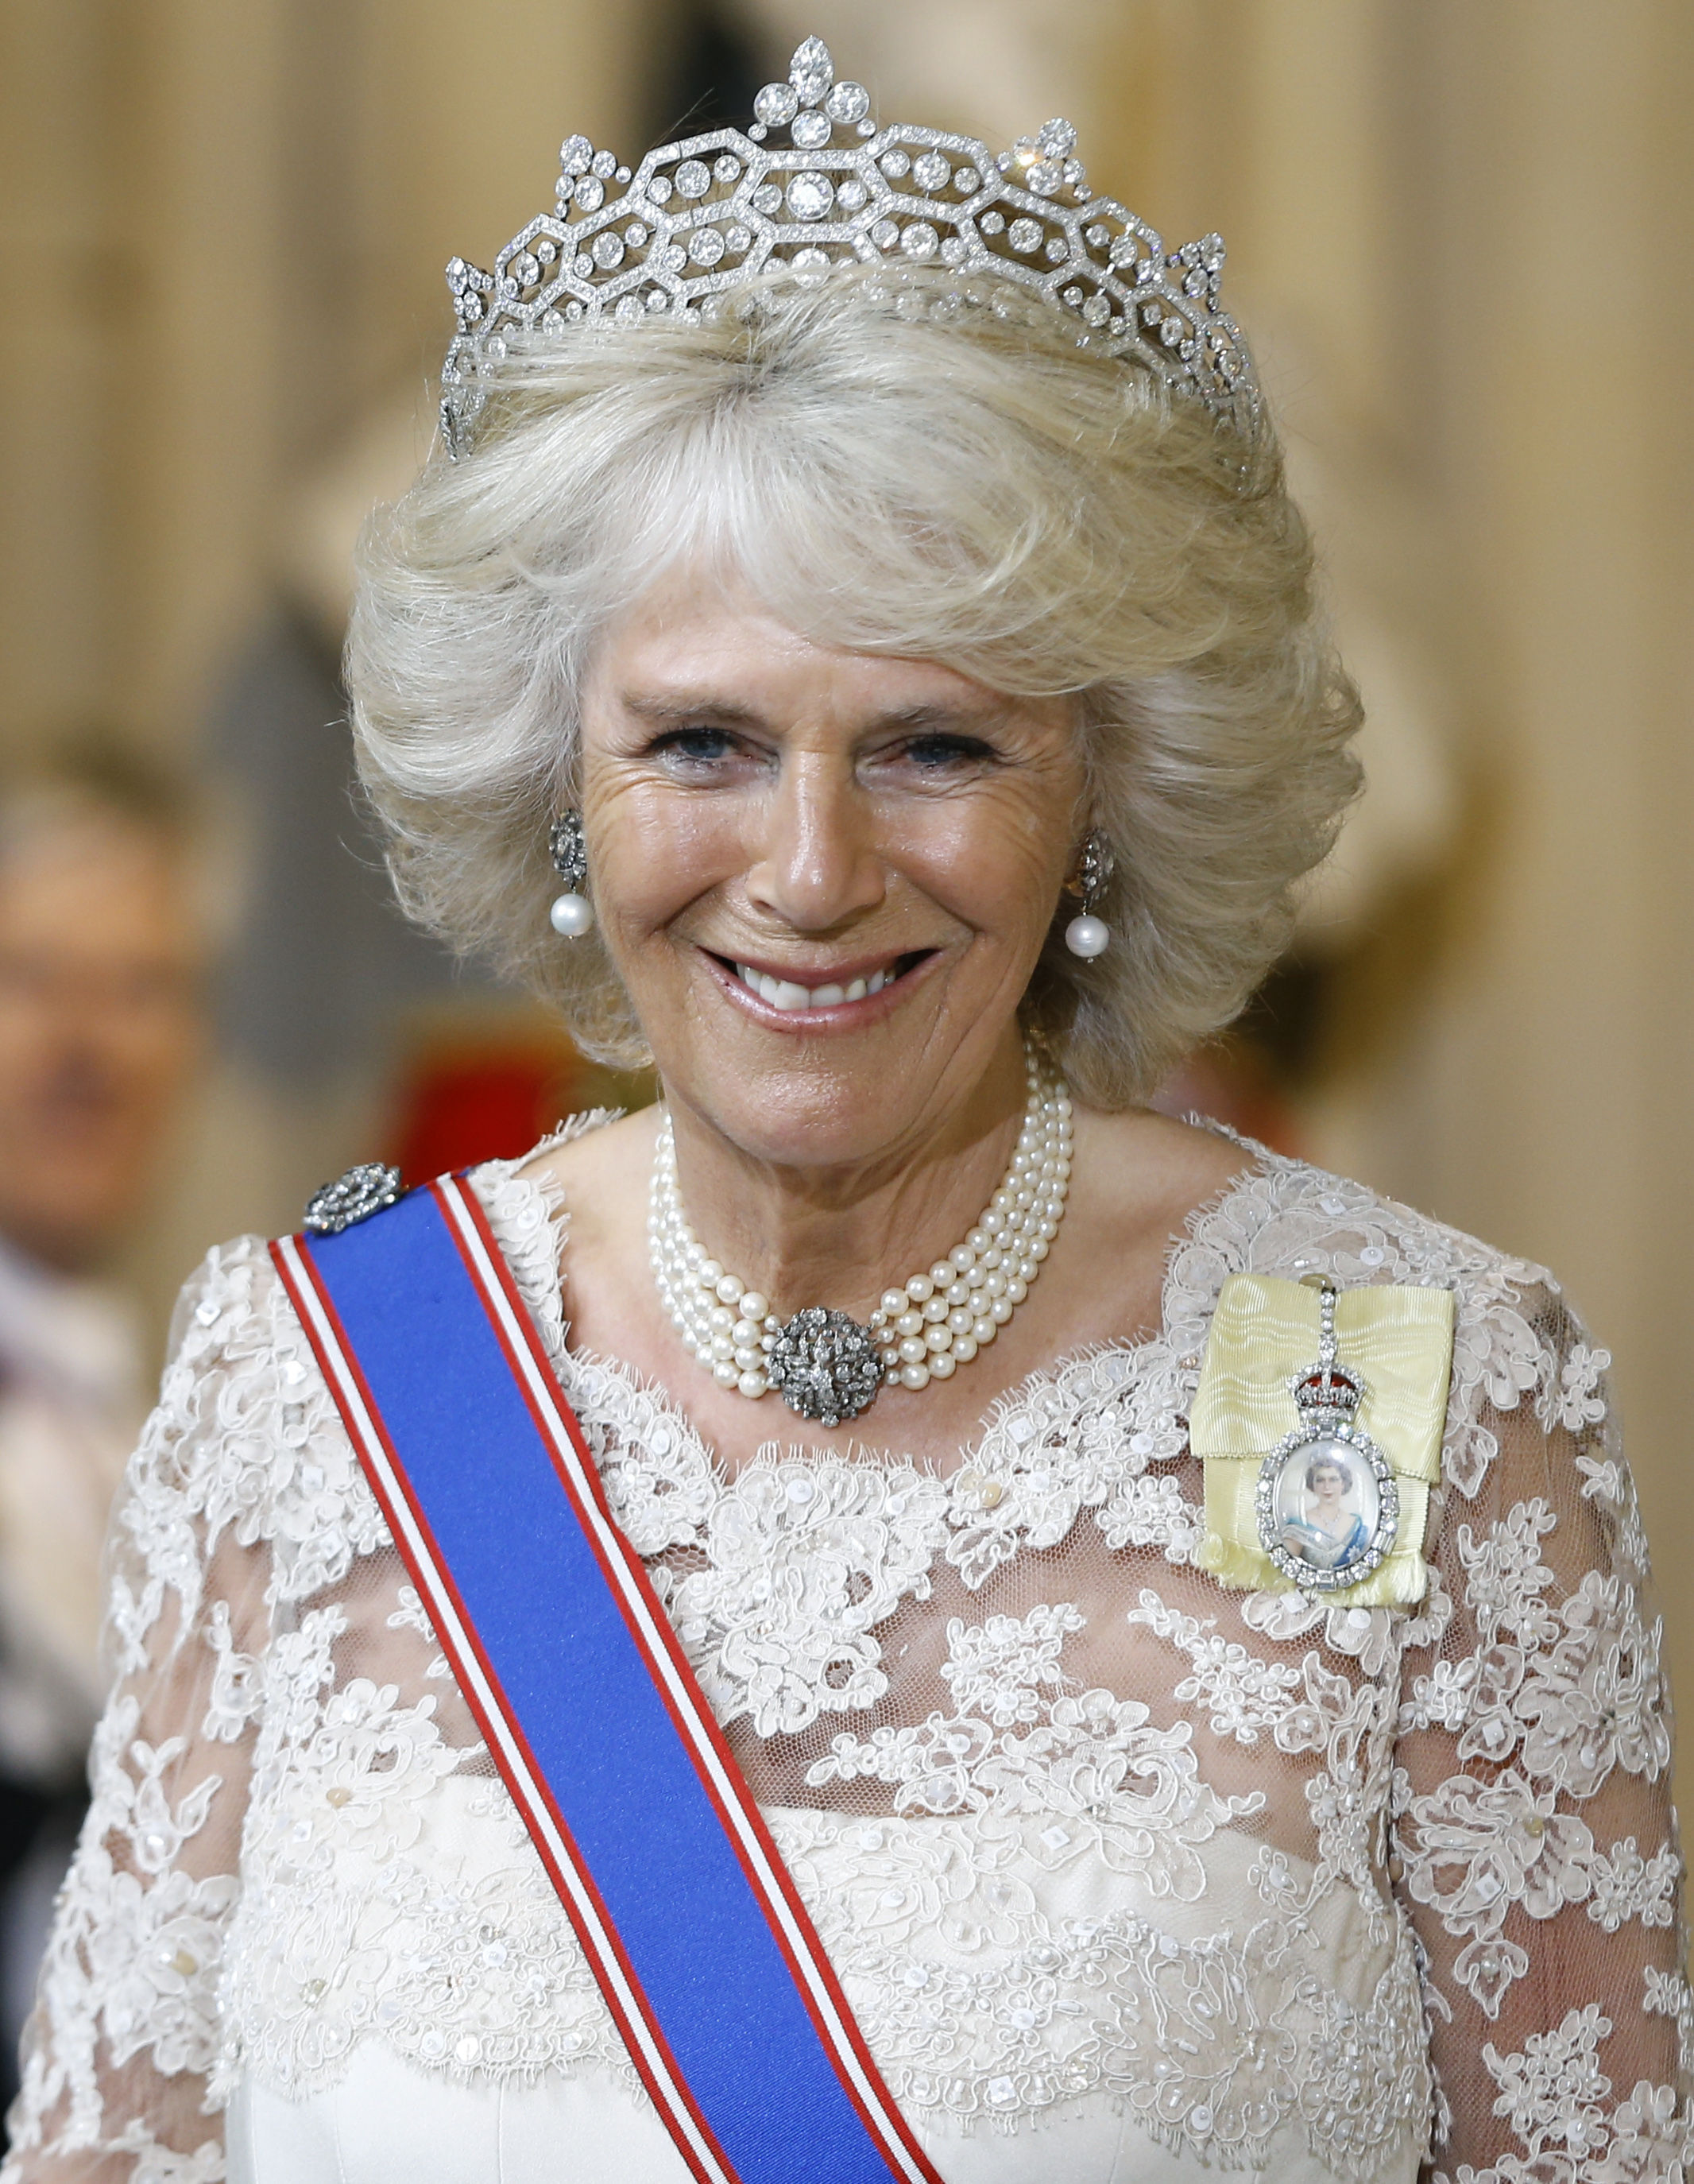 Königin Camilla wurde von Prinz Harry in seinem umstrittenen Buch „Spare“ als „Bösewicht“ gebrandmarkt